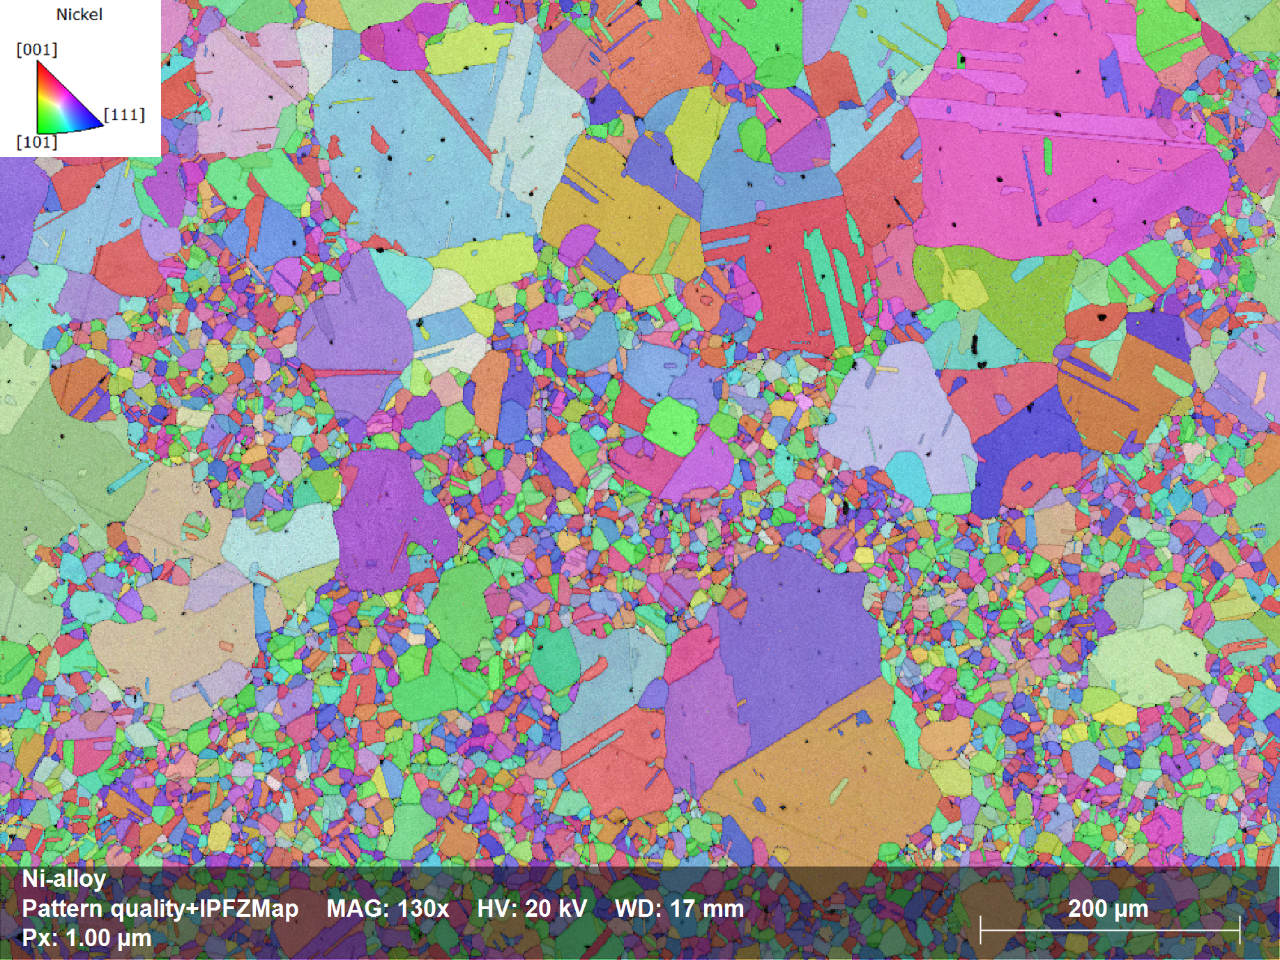 Kristallorientungs-Map (IPF Z) der Ni-Legierung, das die Ausrichtung jedes Korns in Bezug auf die Probensenkrechte zeigt (siehe Farbkodierung in der linken obere Ecke). Messgeschwindigkeit: 501 frames/sec, Nulllösungen: 1,3%. Ohne Datenbereinigung!